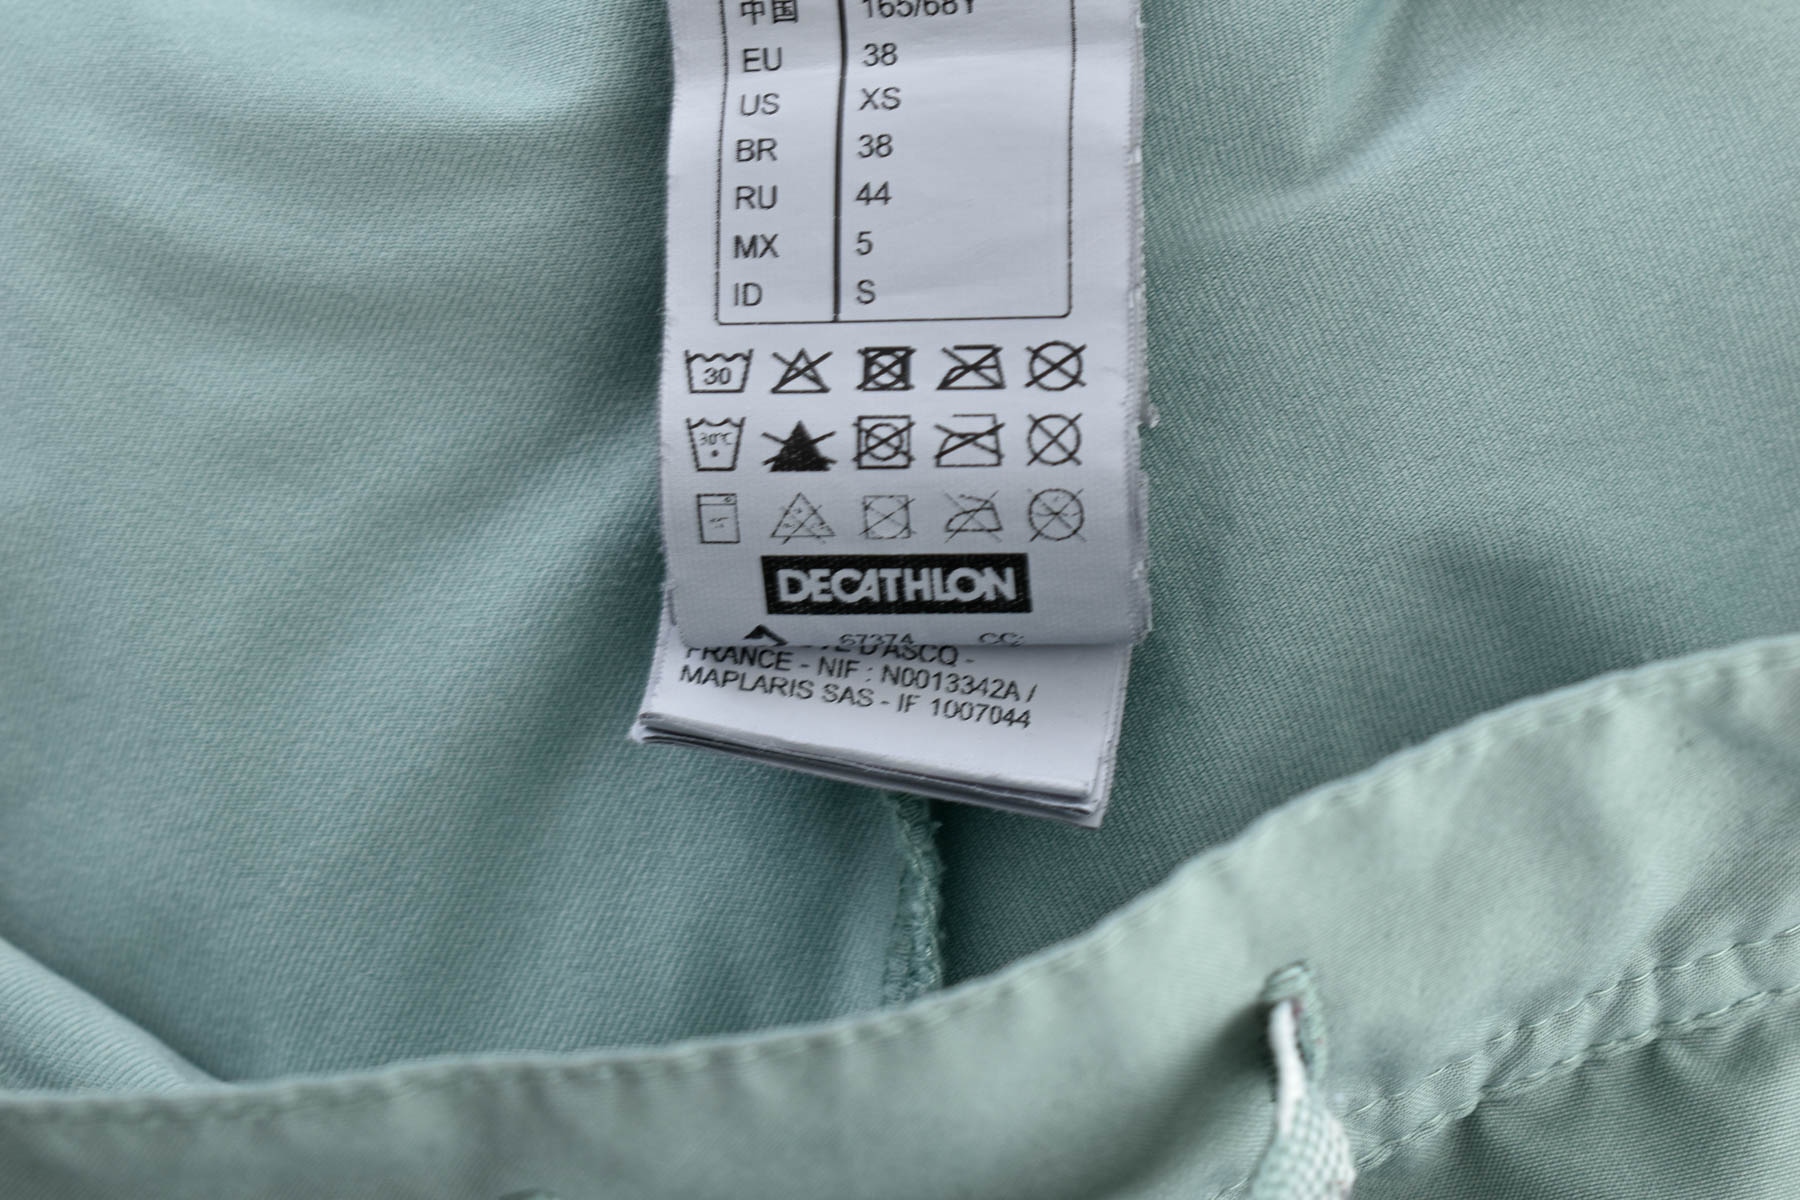 Spodnie spódnicowe - Decatlon - 2